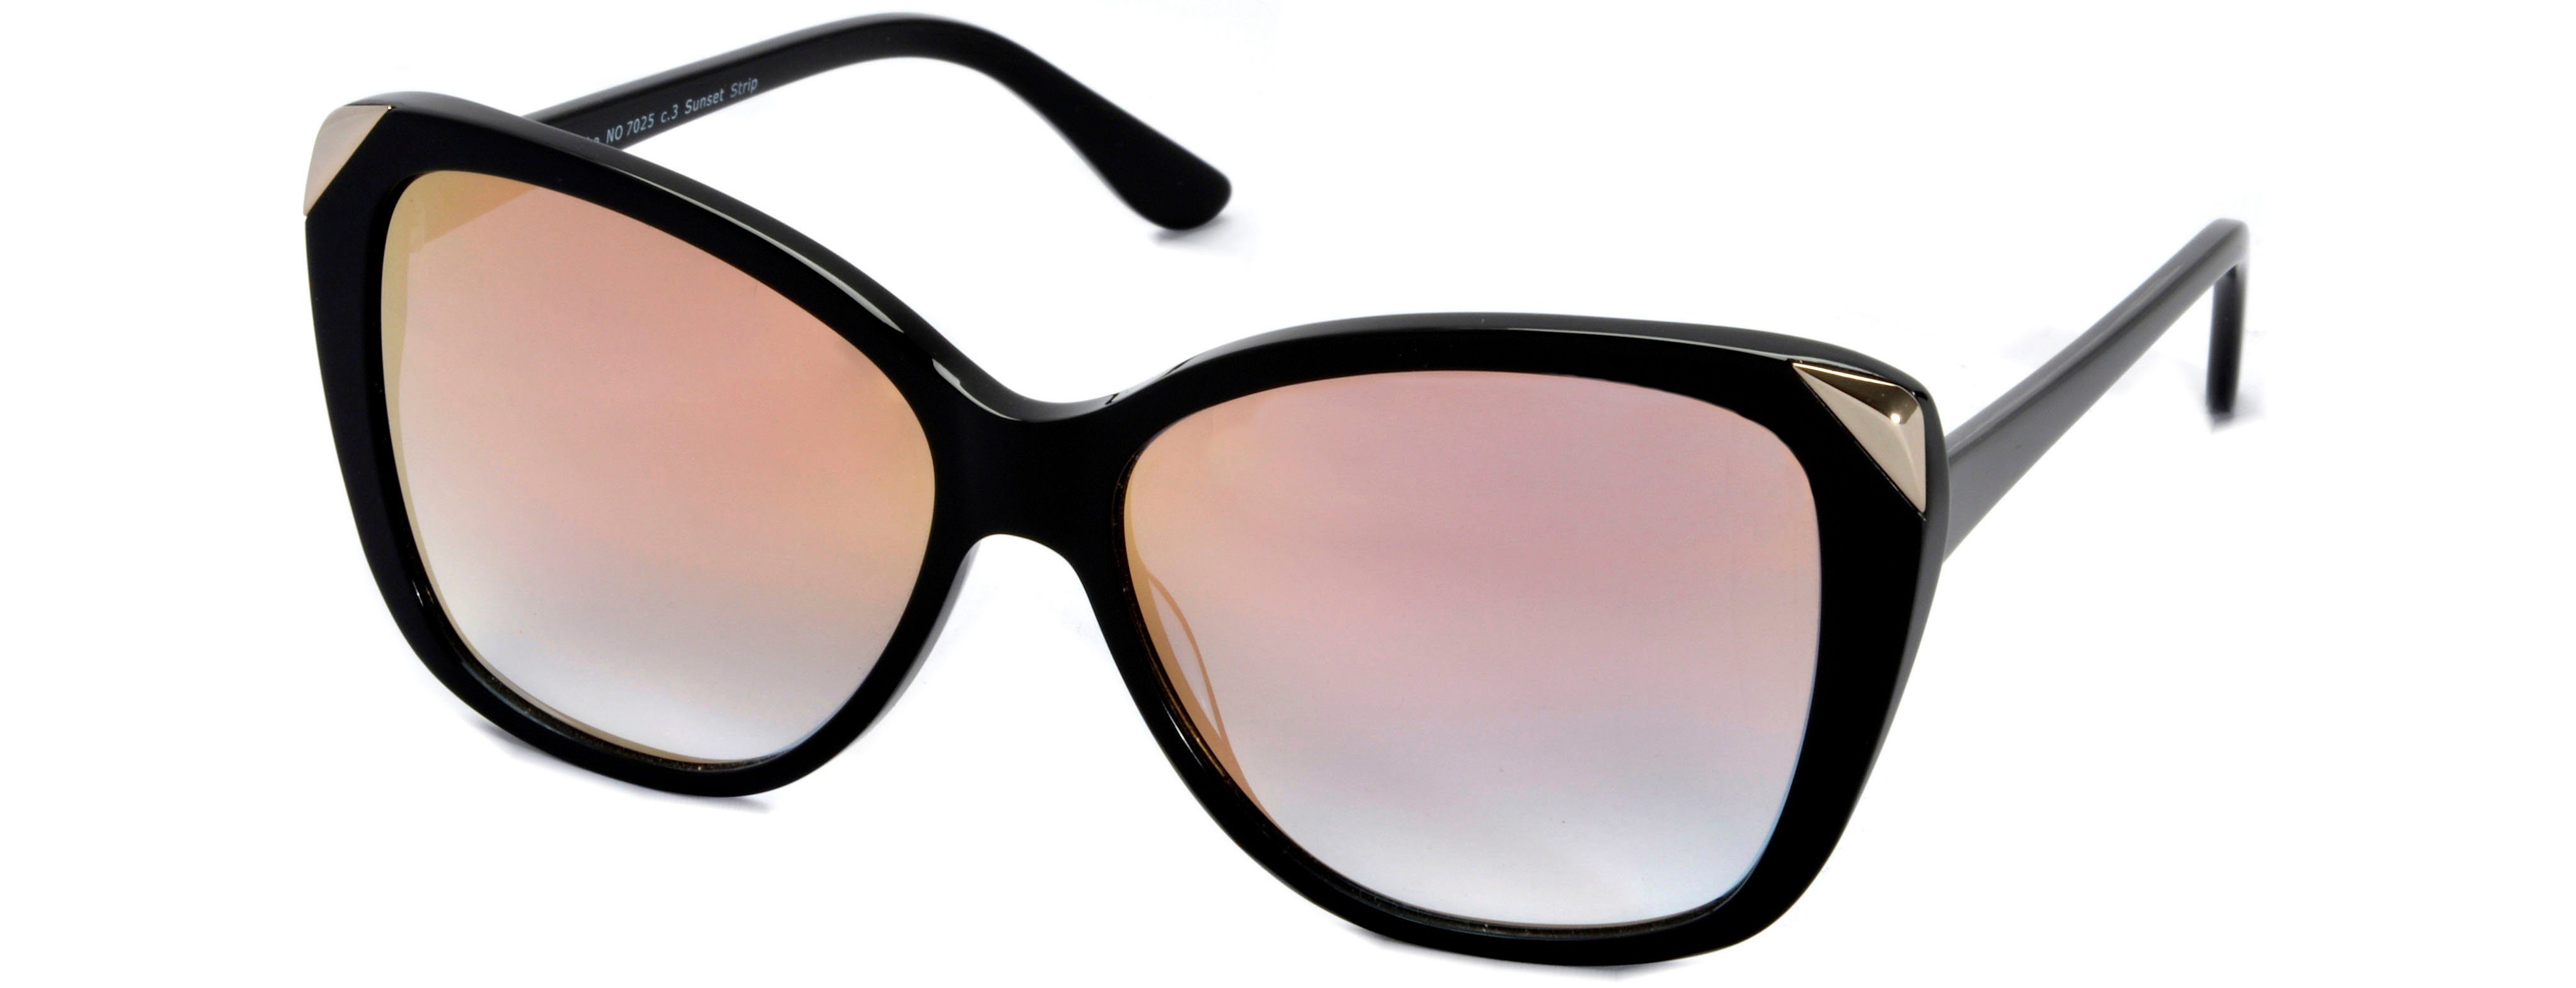 Natascha Ochsenknecht Sonnenbrille Sunset Strip | Sonnenbrillen